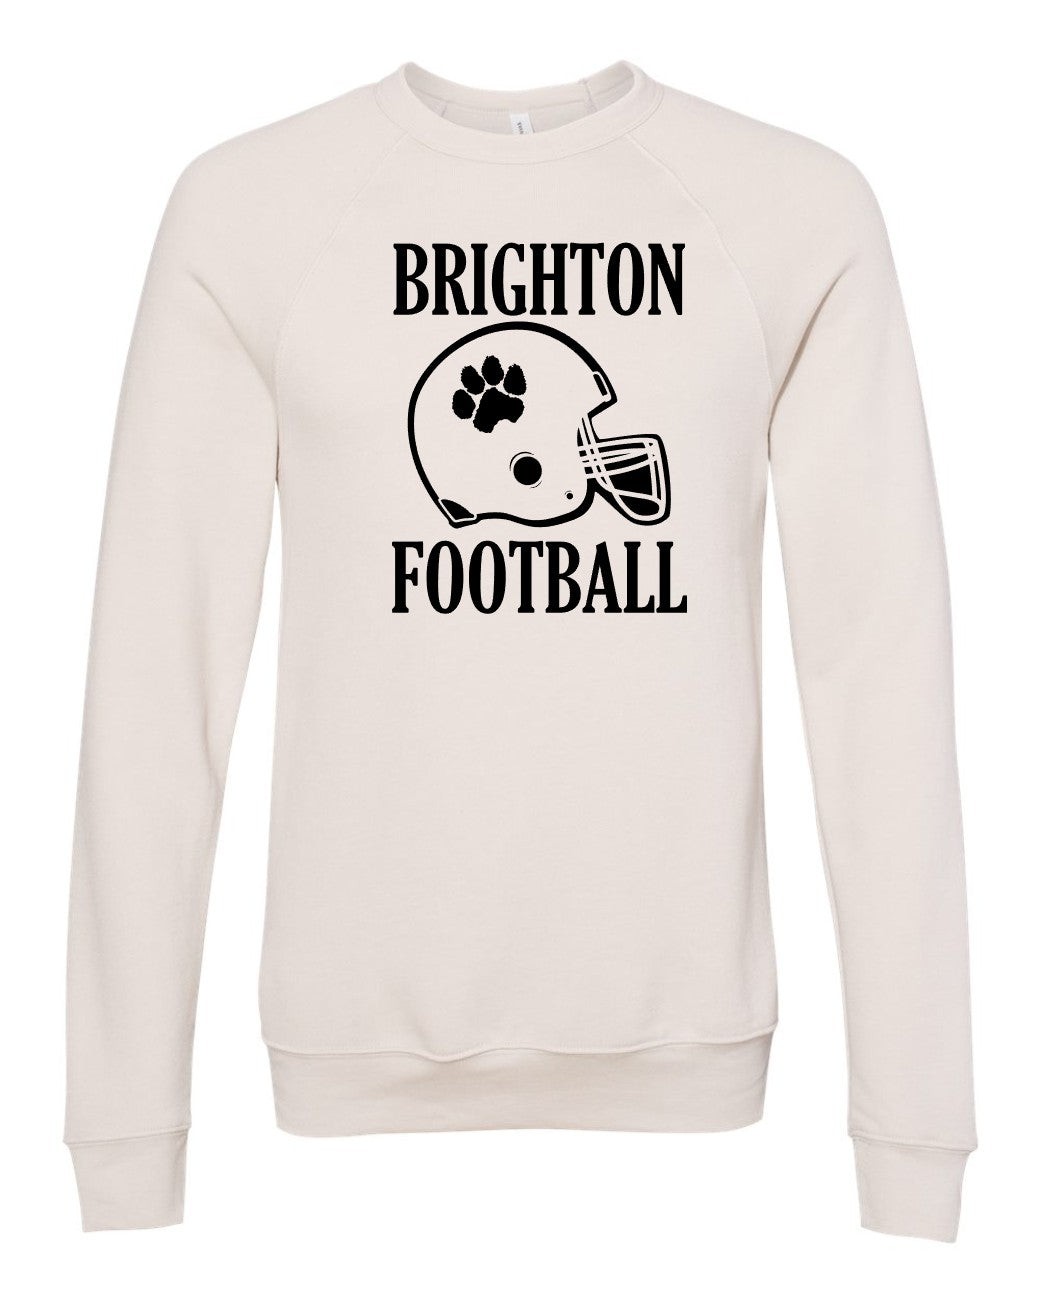 Brighton Football Premium Crewneck